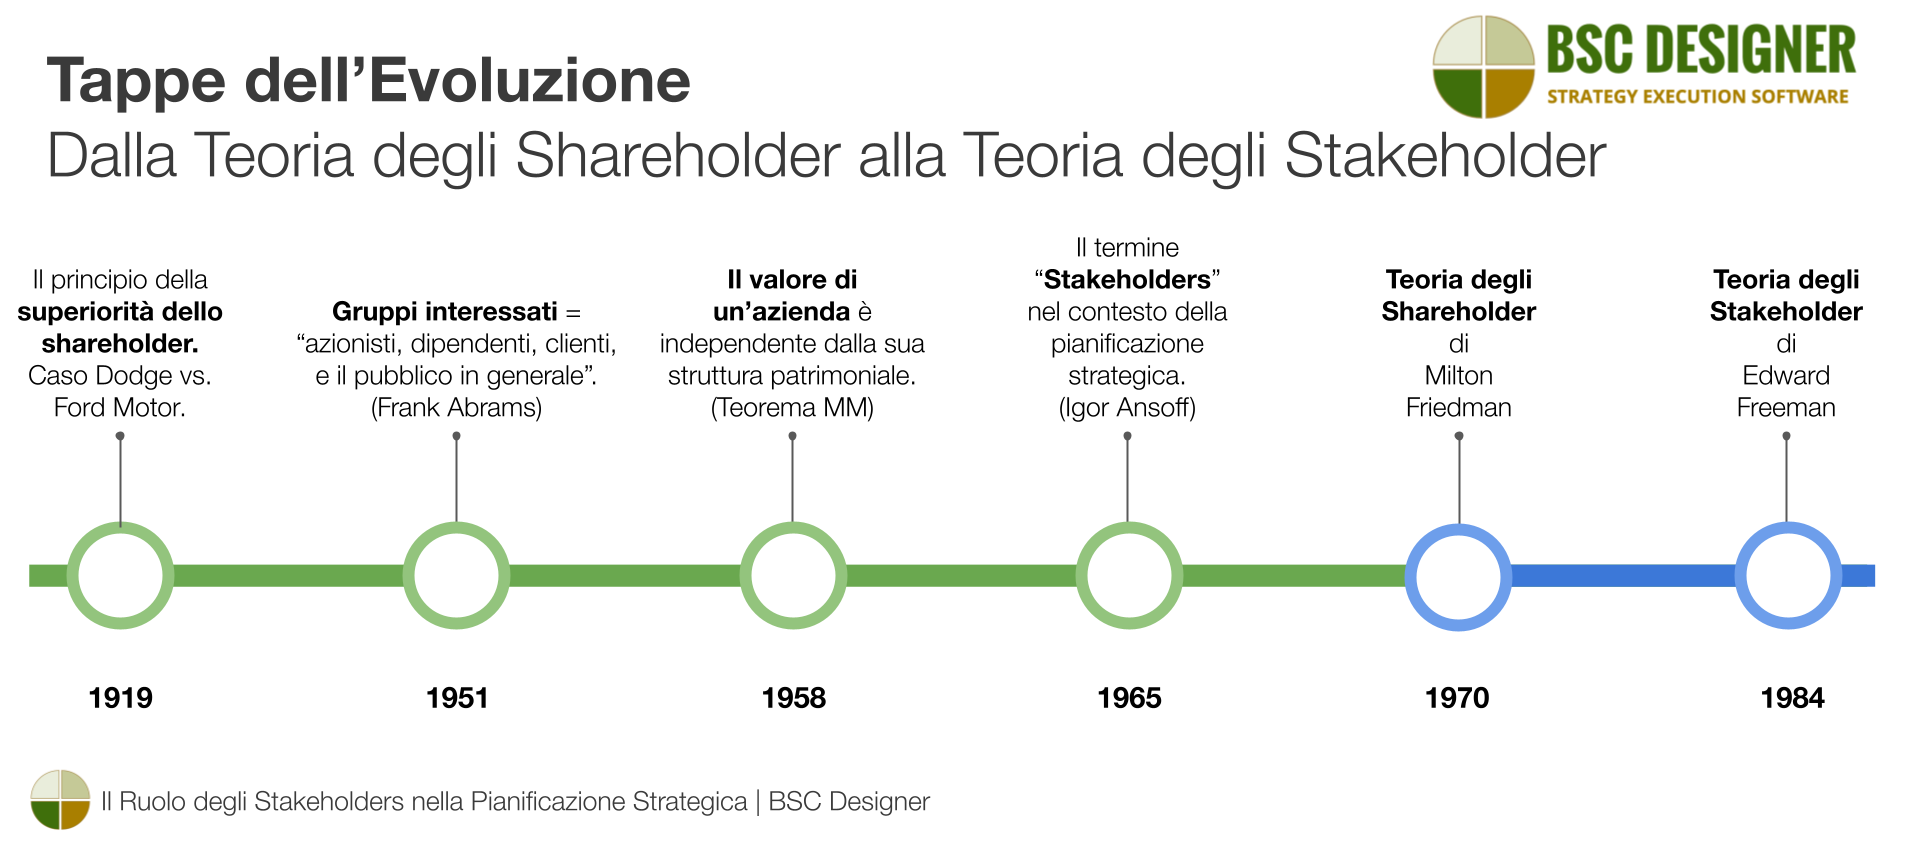 Tappe dell'evoluzione dalla teoria degli shareholder a quella degli stakeholder